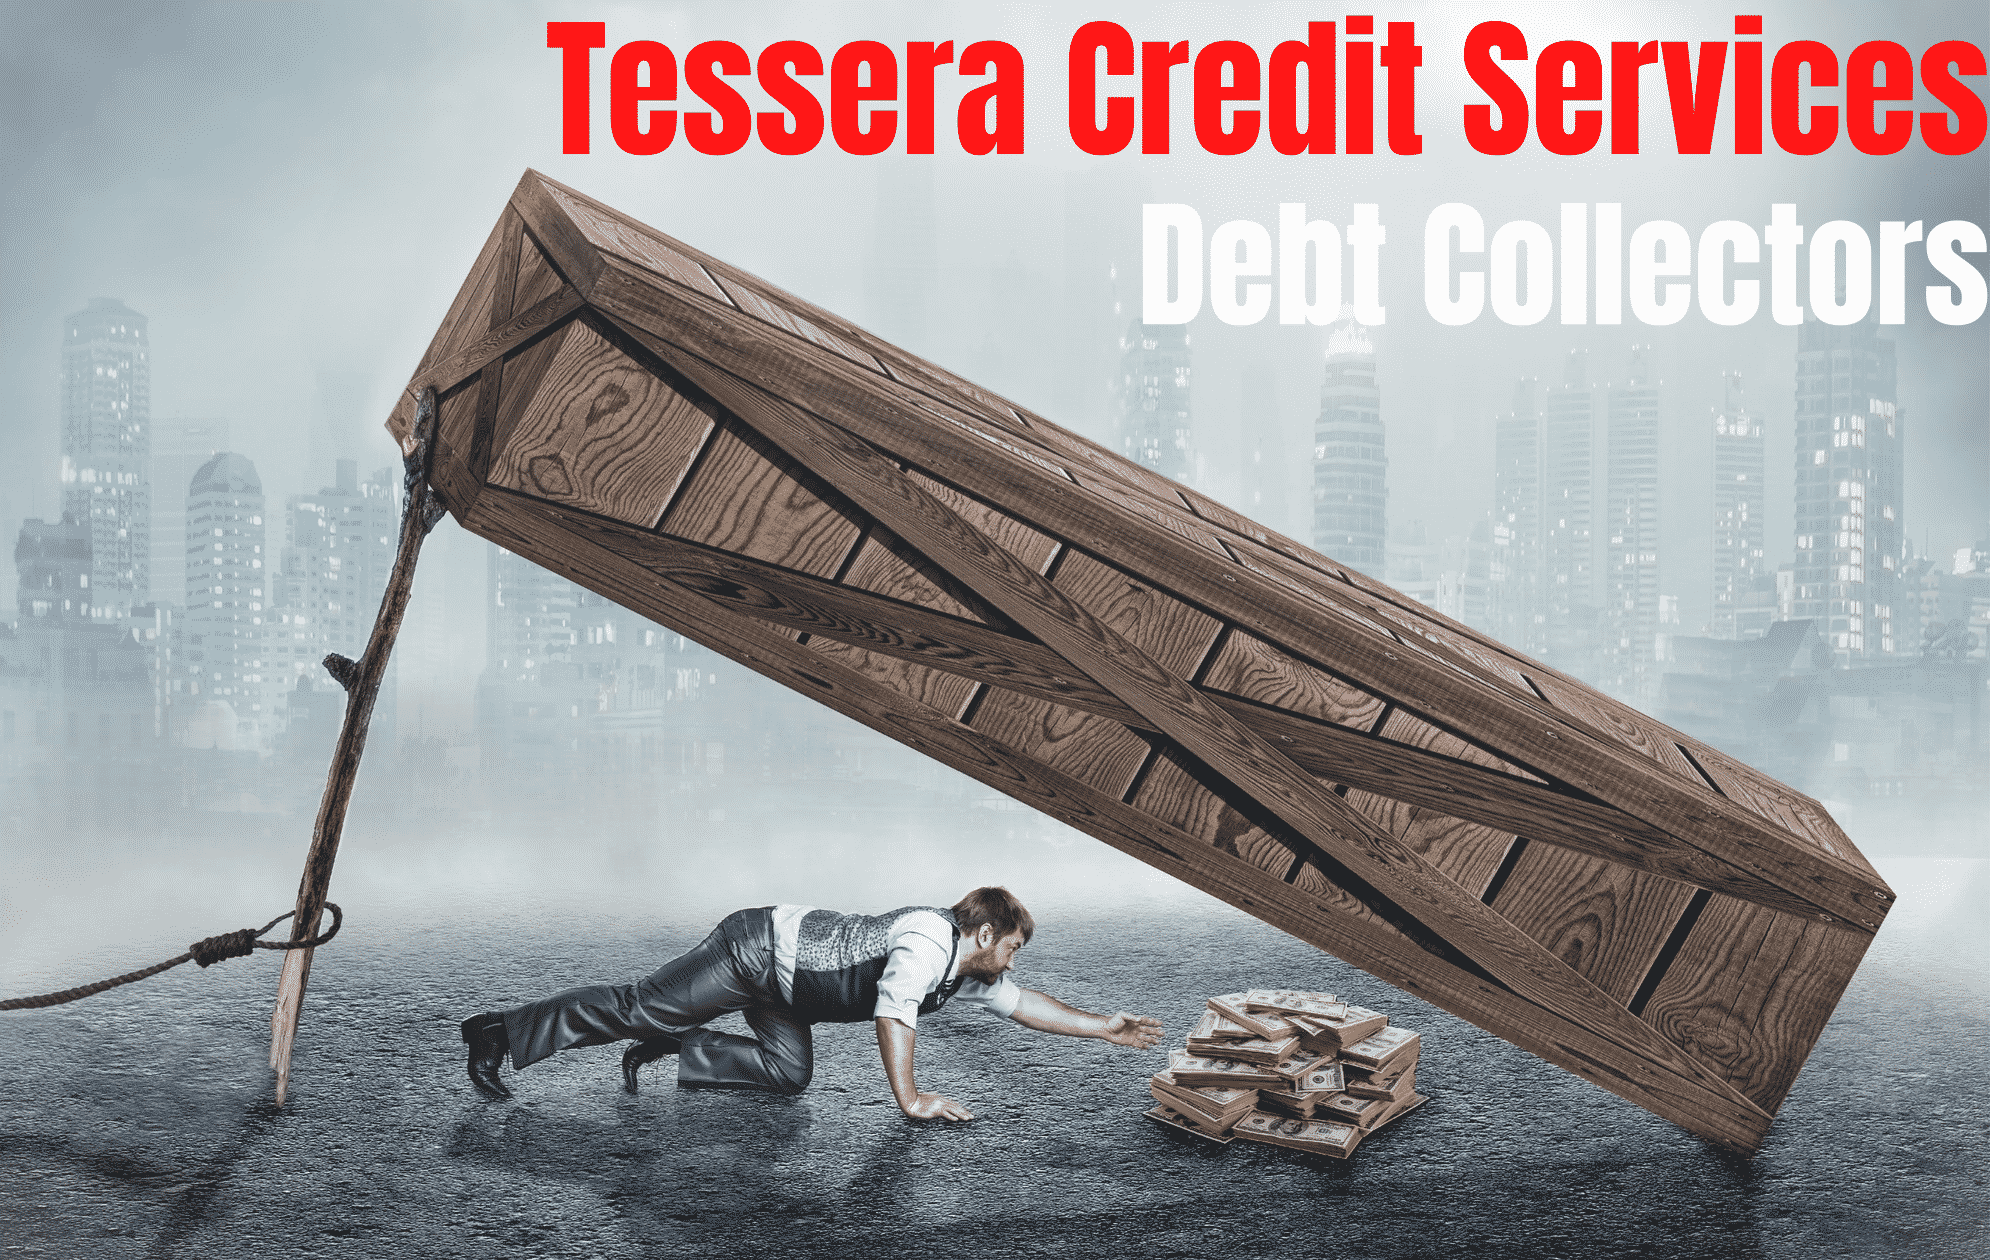 tessera-credit-services-debt-collectors